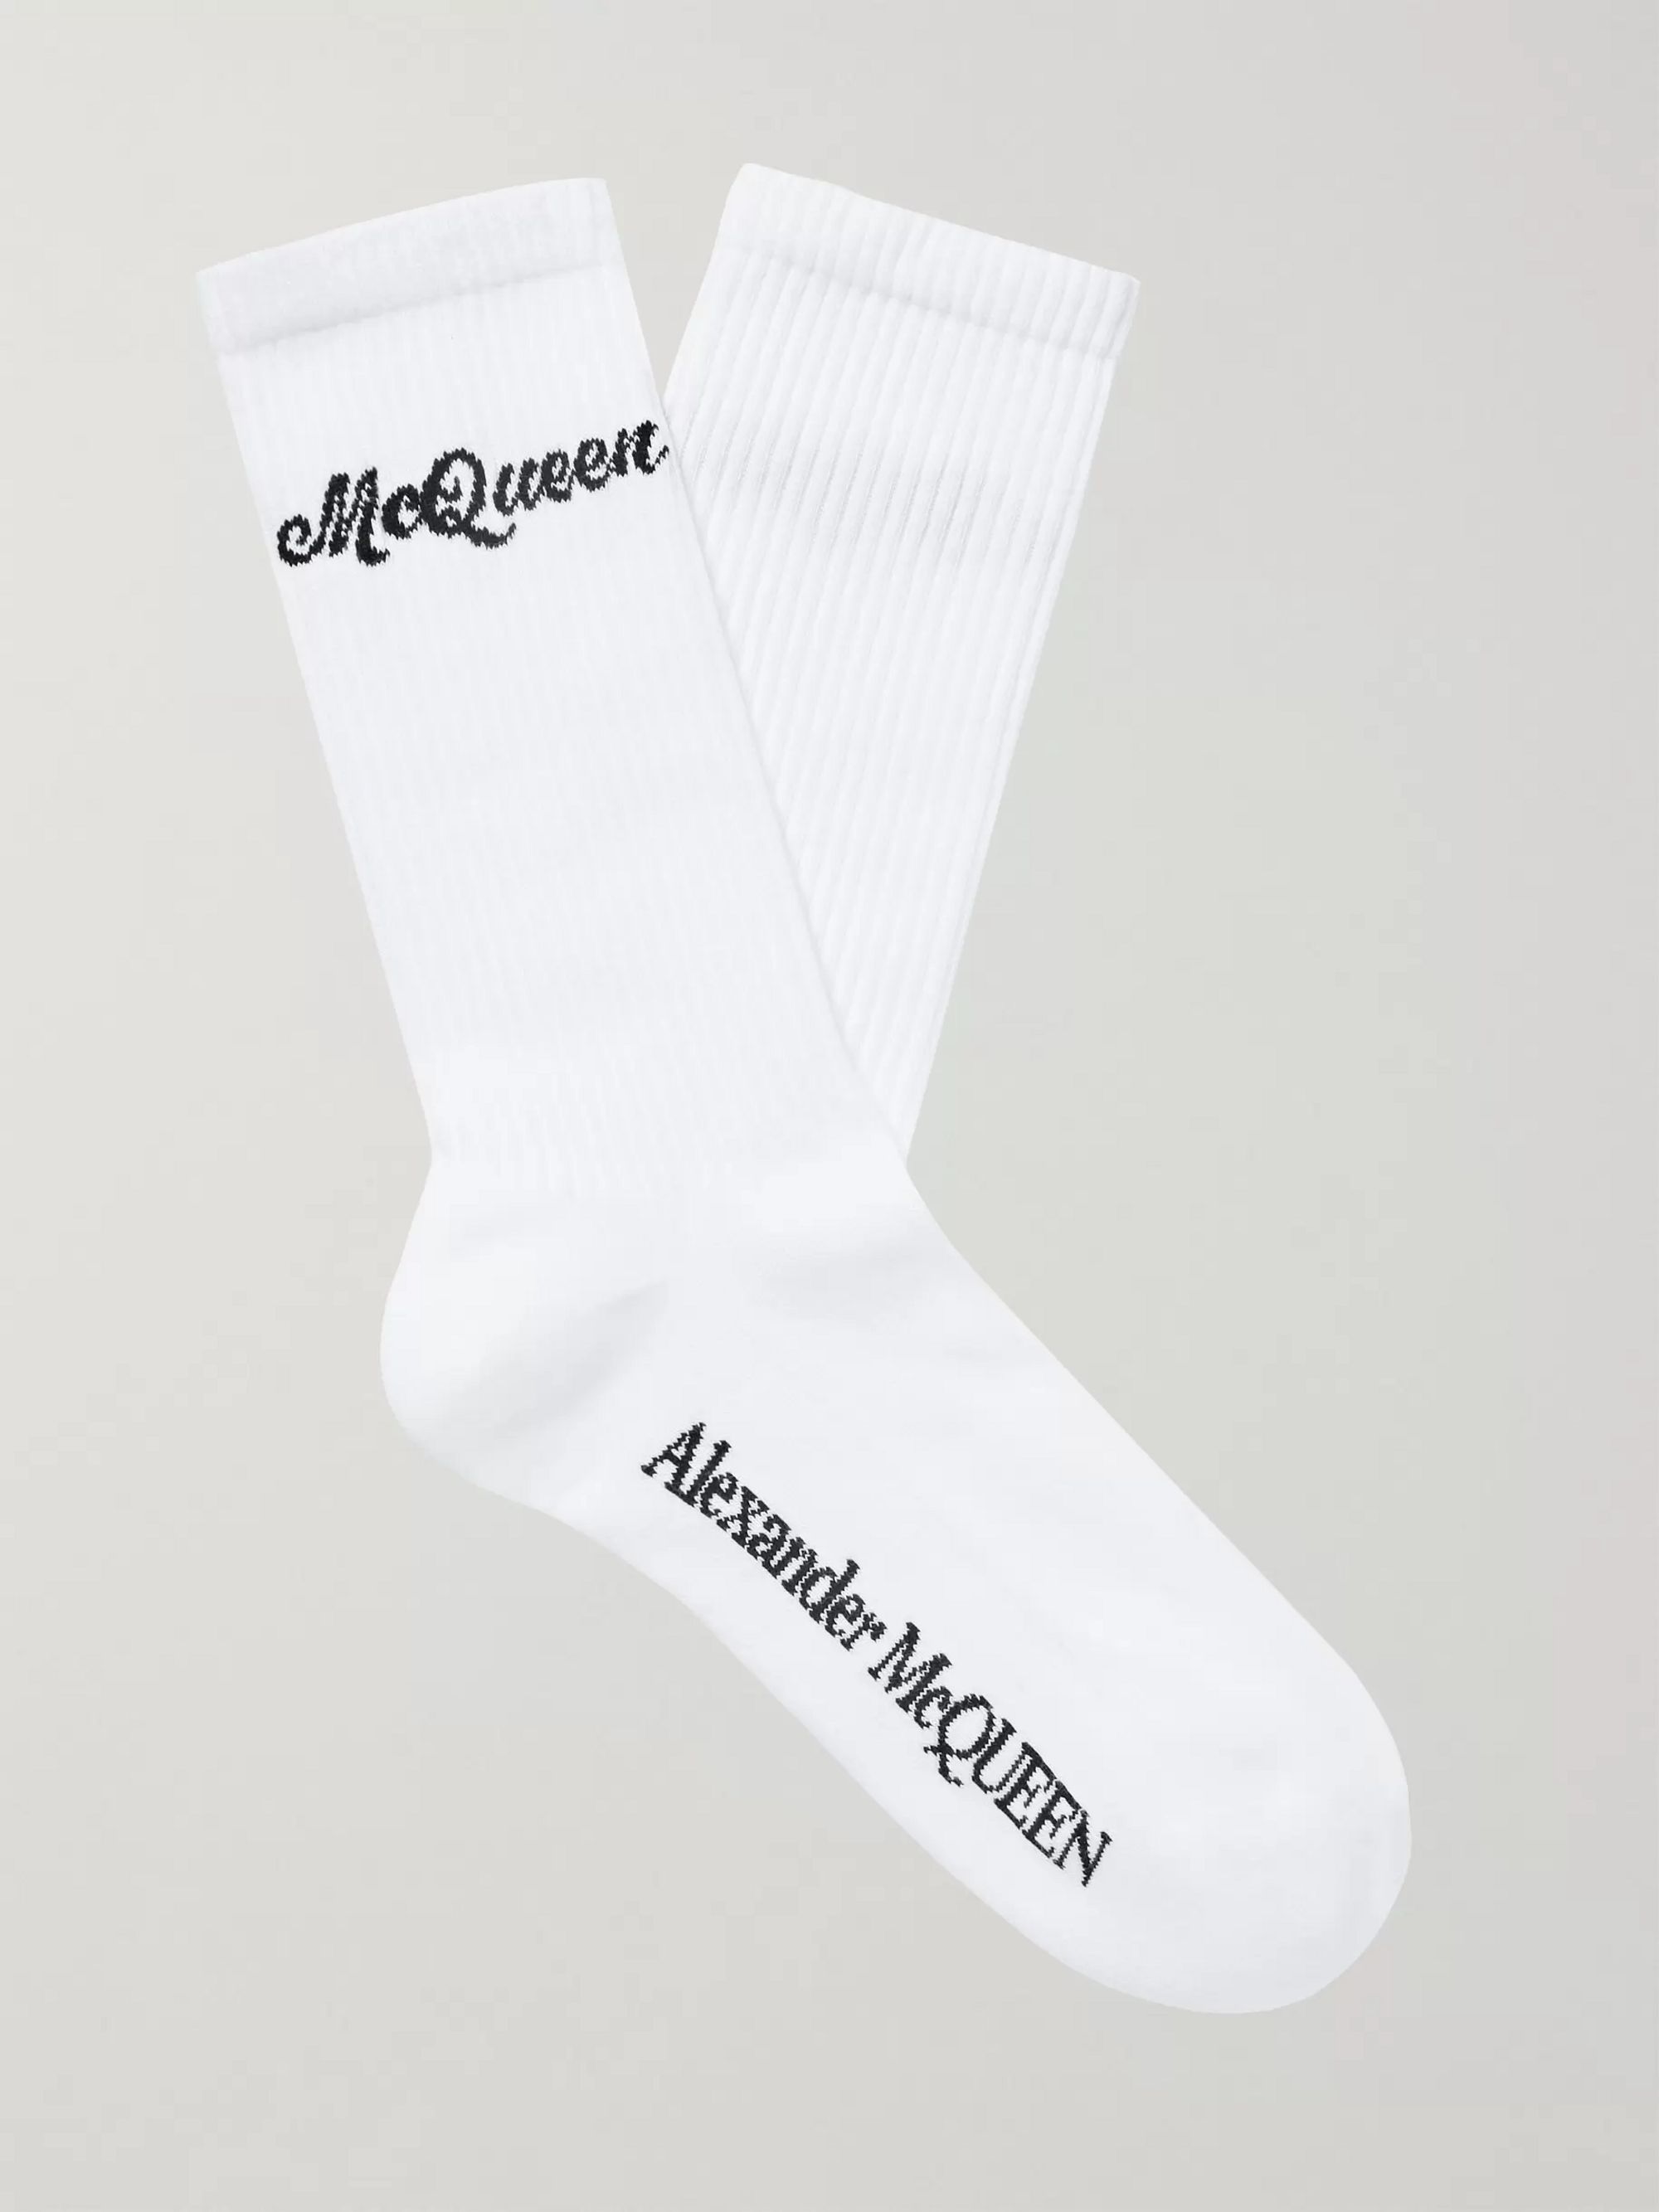 alexander mcqueen socks